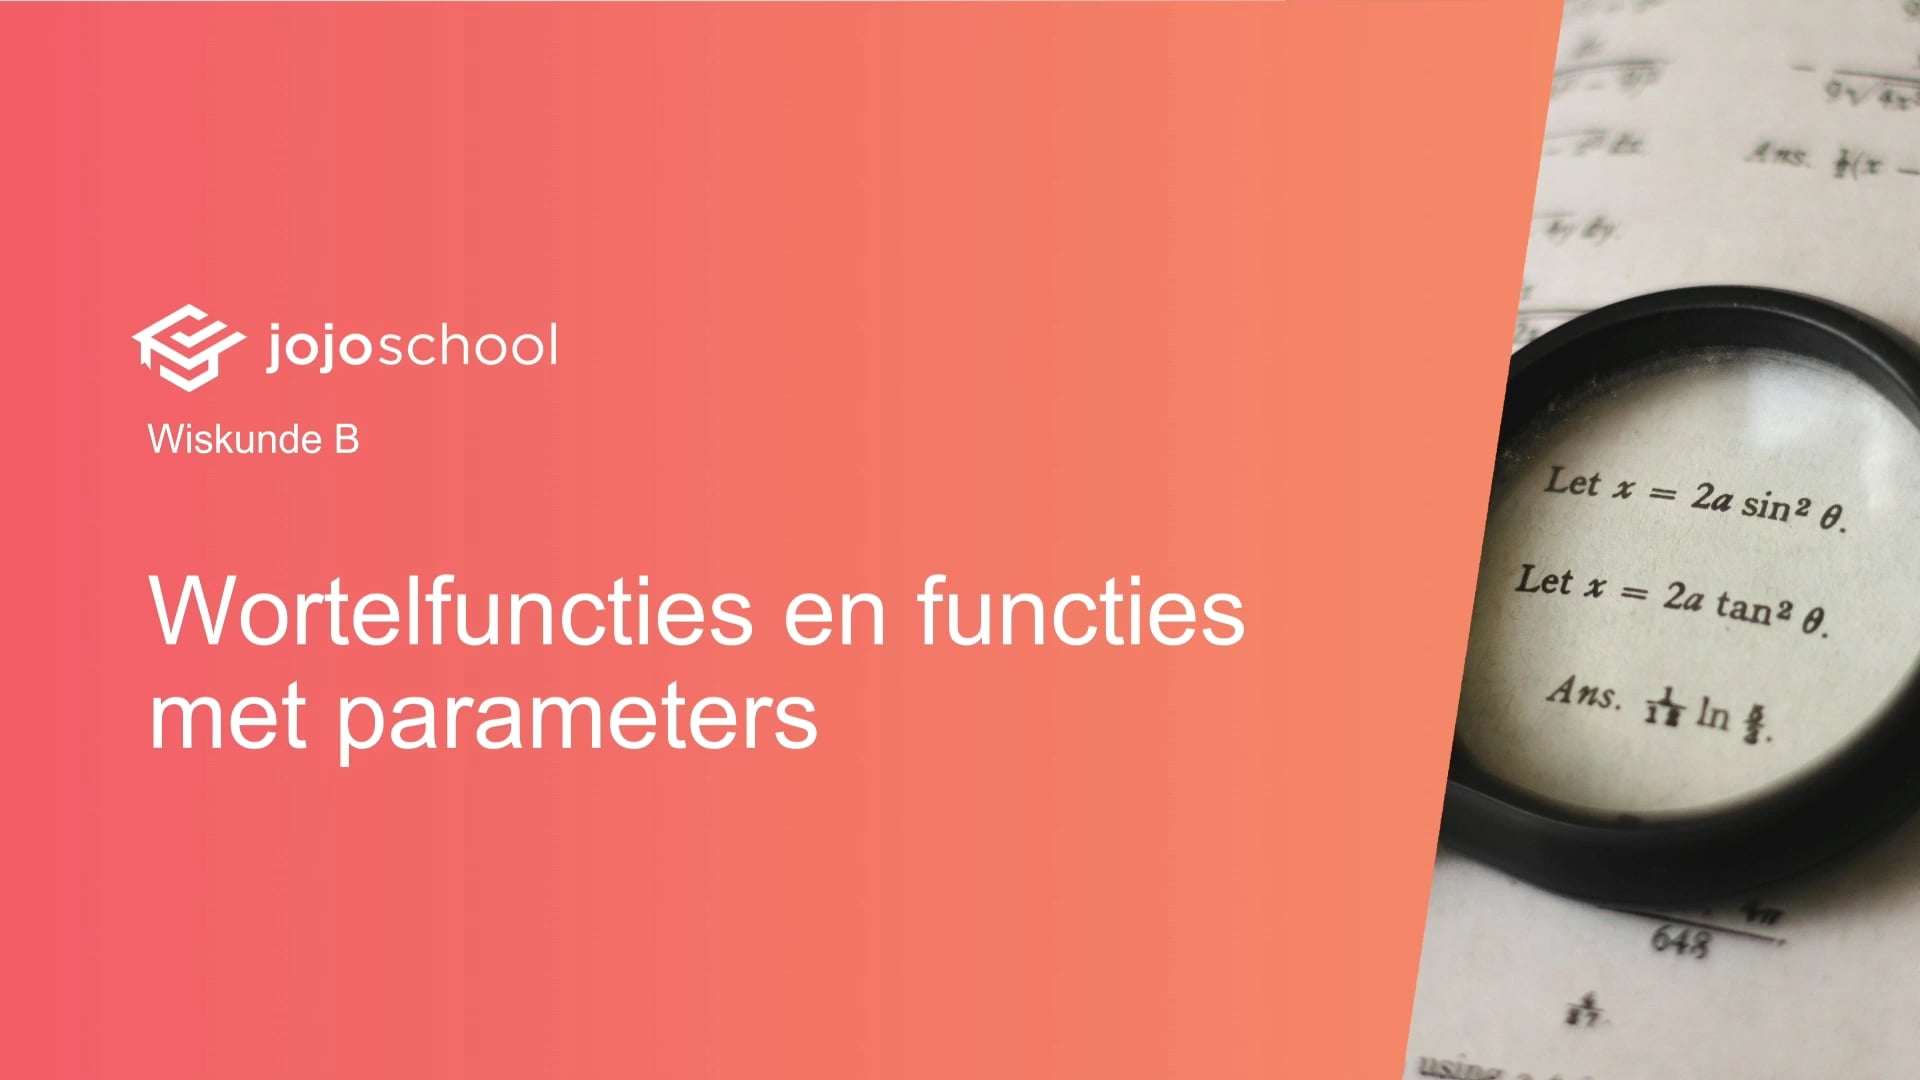 Wortelfuncties en functies met parameters